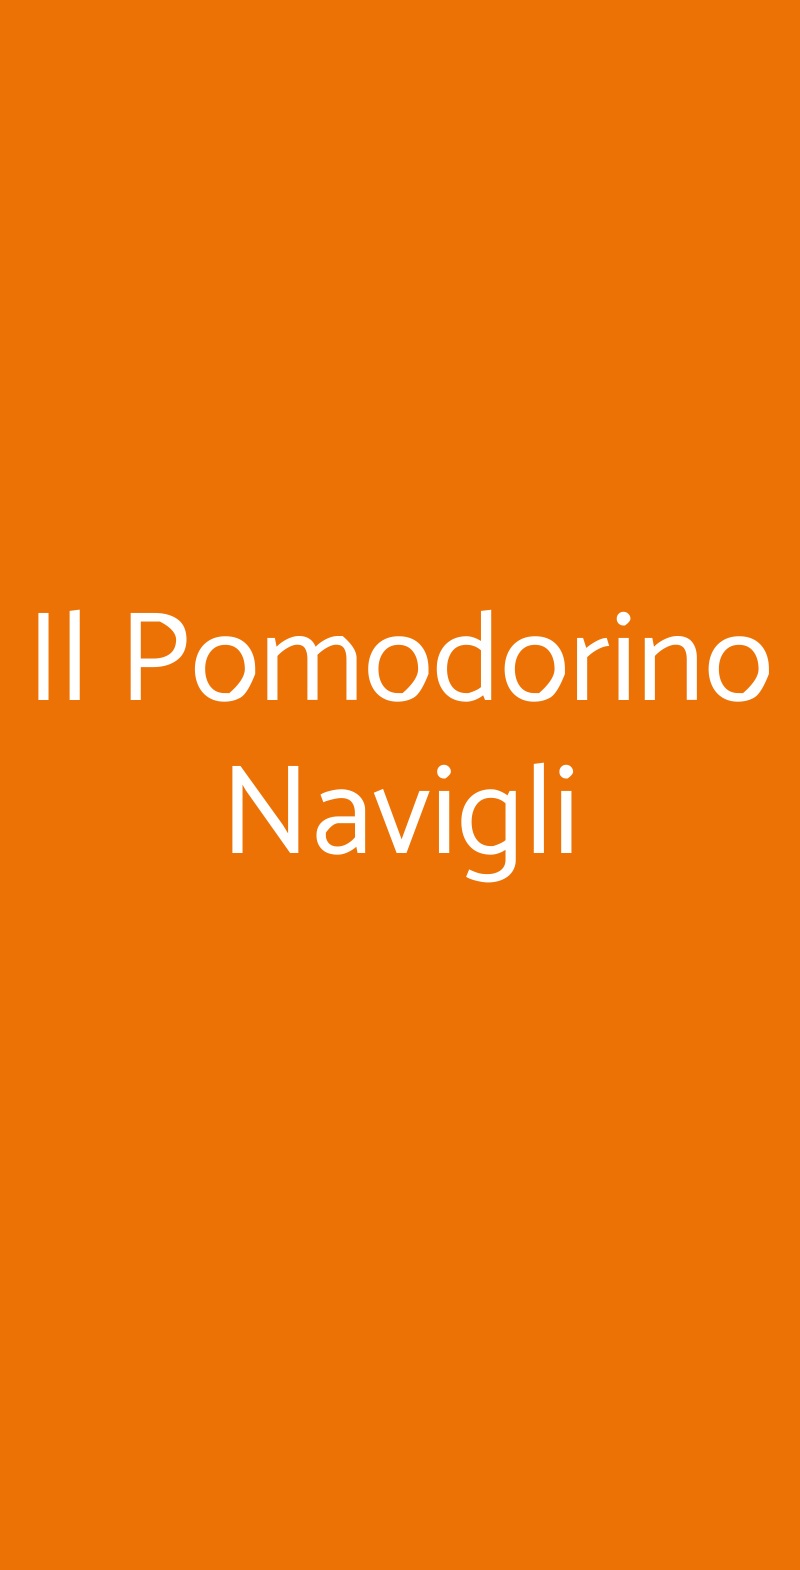 Il Pomodorino Navigli Milano menù 1 pagina